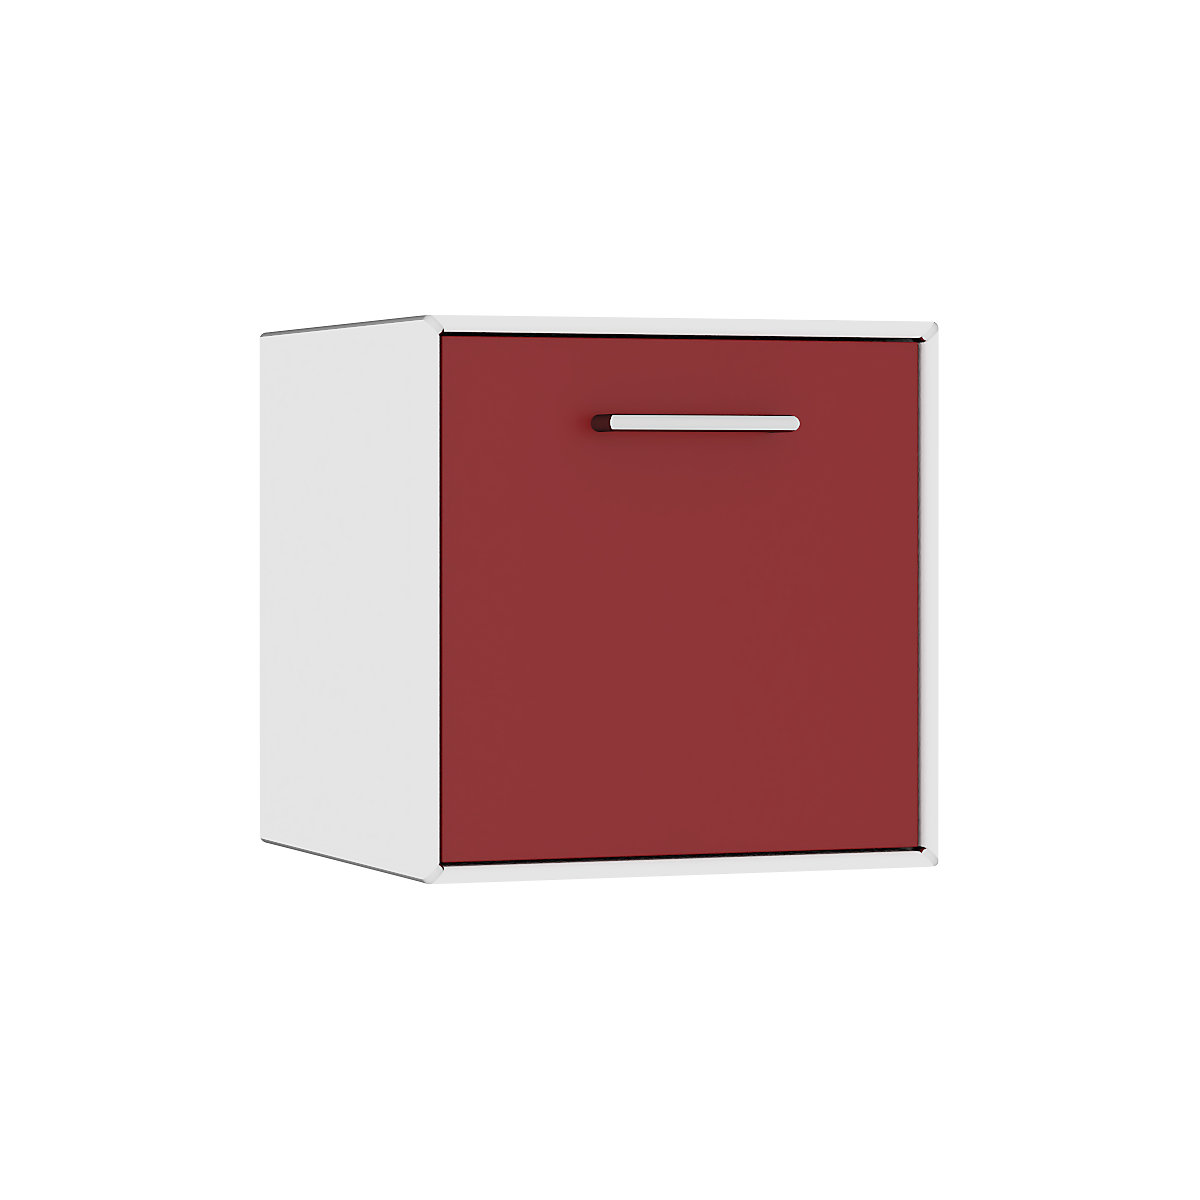 mauser – Cuie individuală, suspendată, 1 sertar, lățime 385 mm, alb pur / roșu rubin